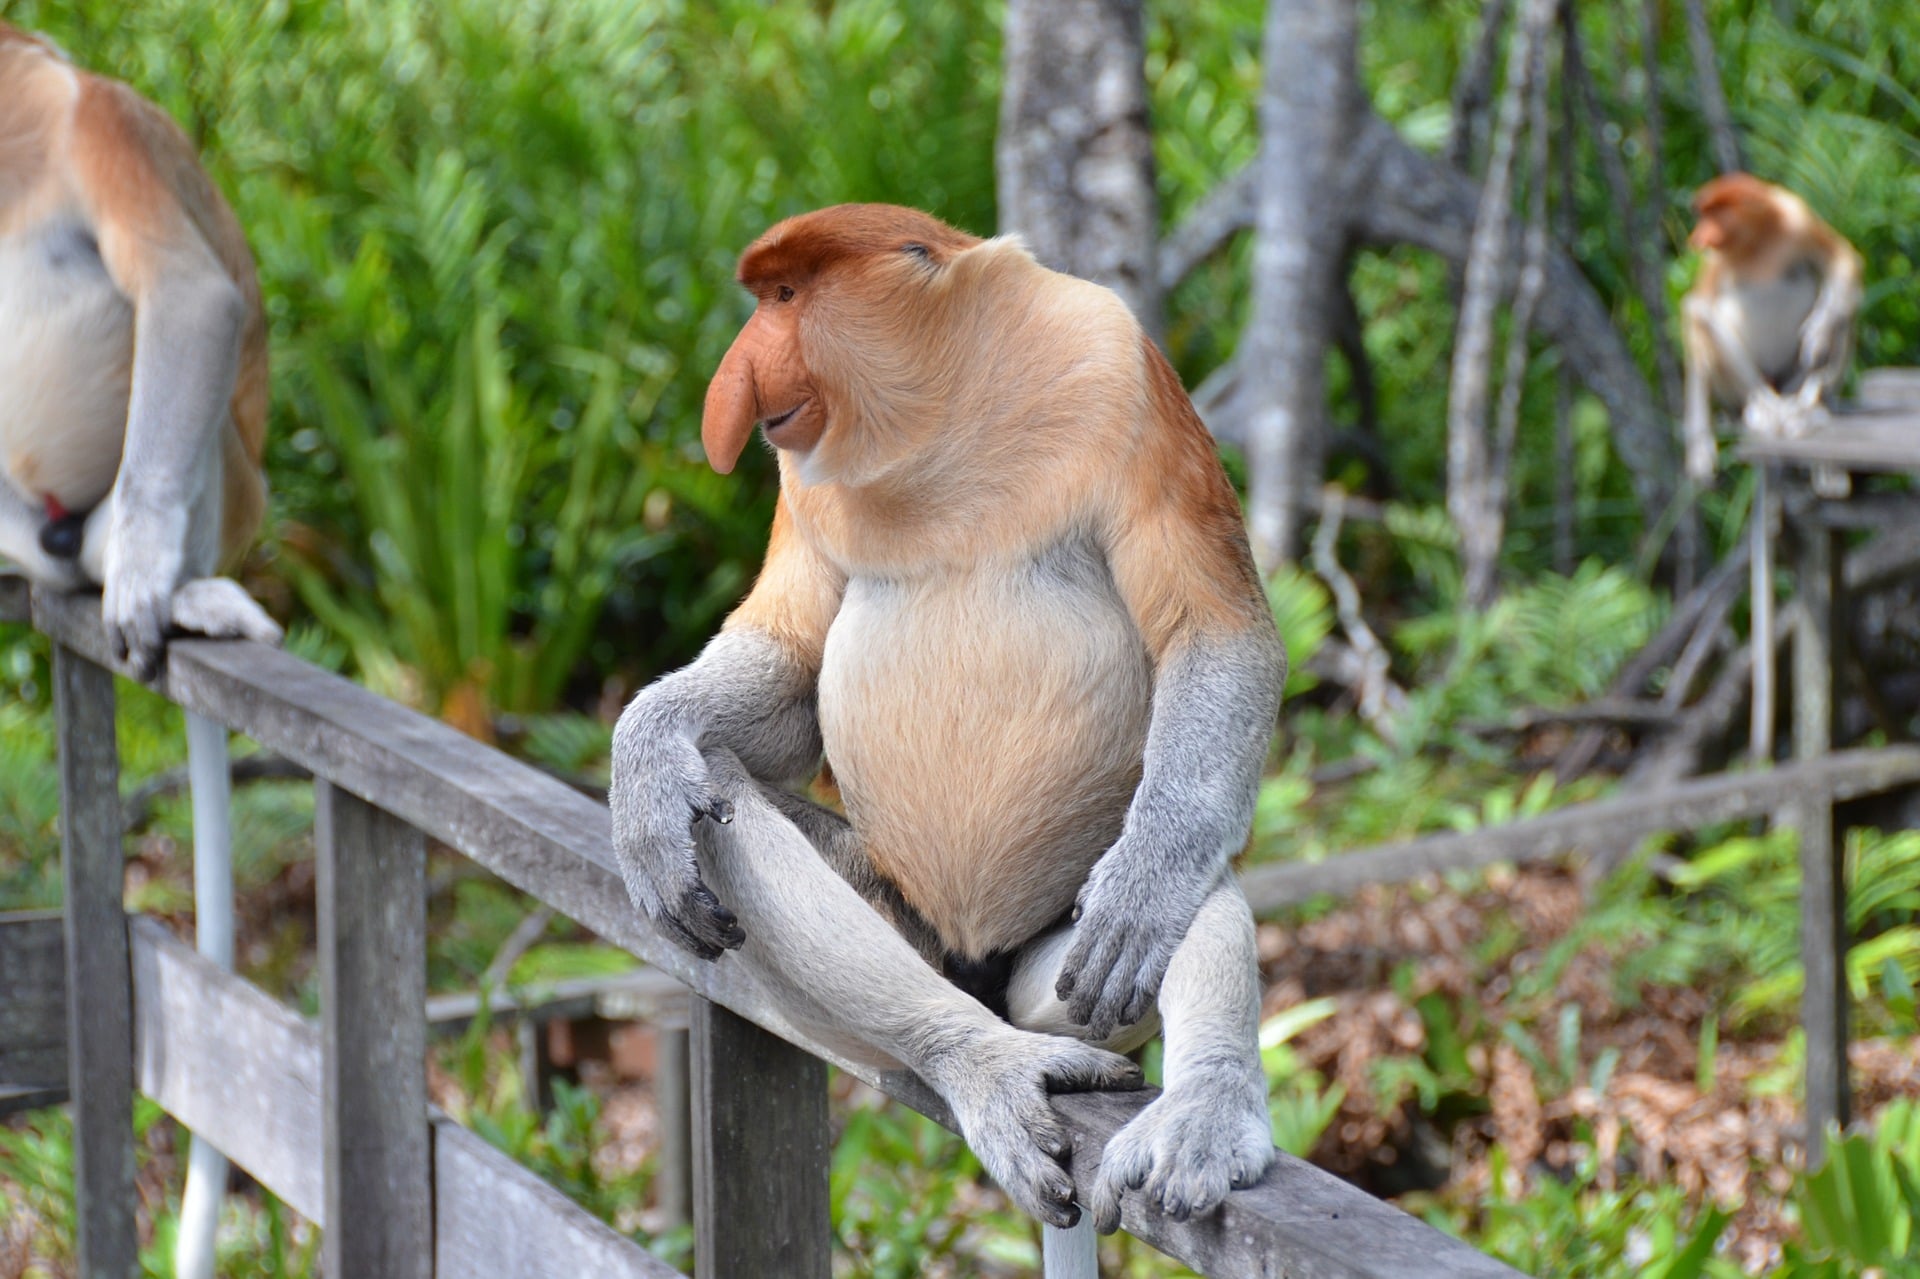 małpa Nosacz Sundajski Proboscis monkey